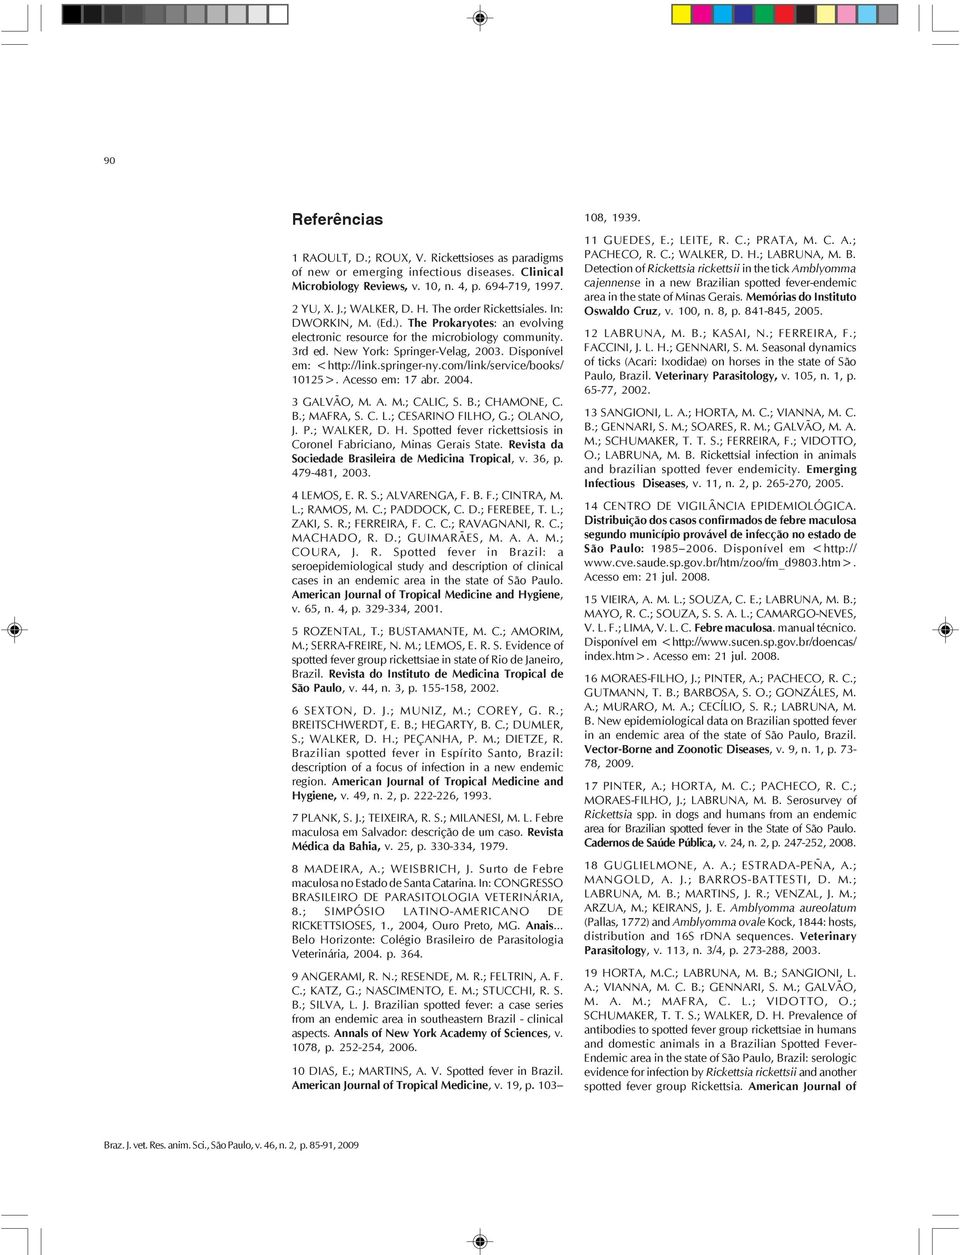 springer-ny.com/link/service/books/ 10125>. Acesso em: 17 abr. 2004. 3 GALVÃO, M. A. M.; CALIC, S. B.; CHAMONE, C. B.; MAFRA, S. C. L.; CESARINO FILHO, G.; OLANO, J. P.; WALKER, D. H.